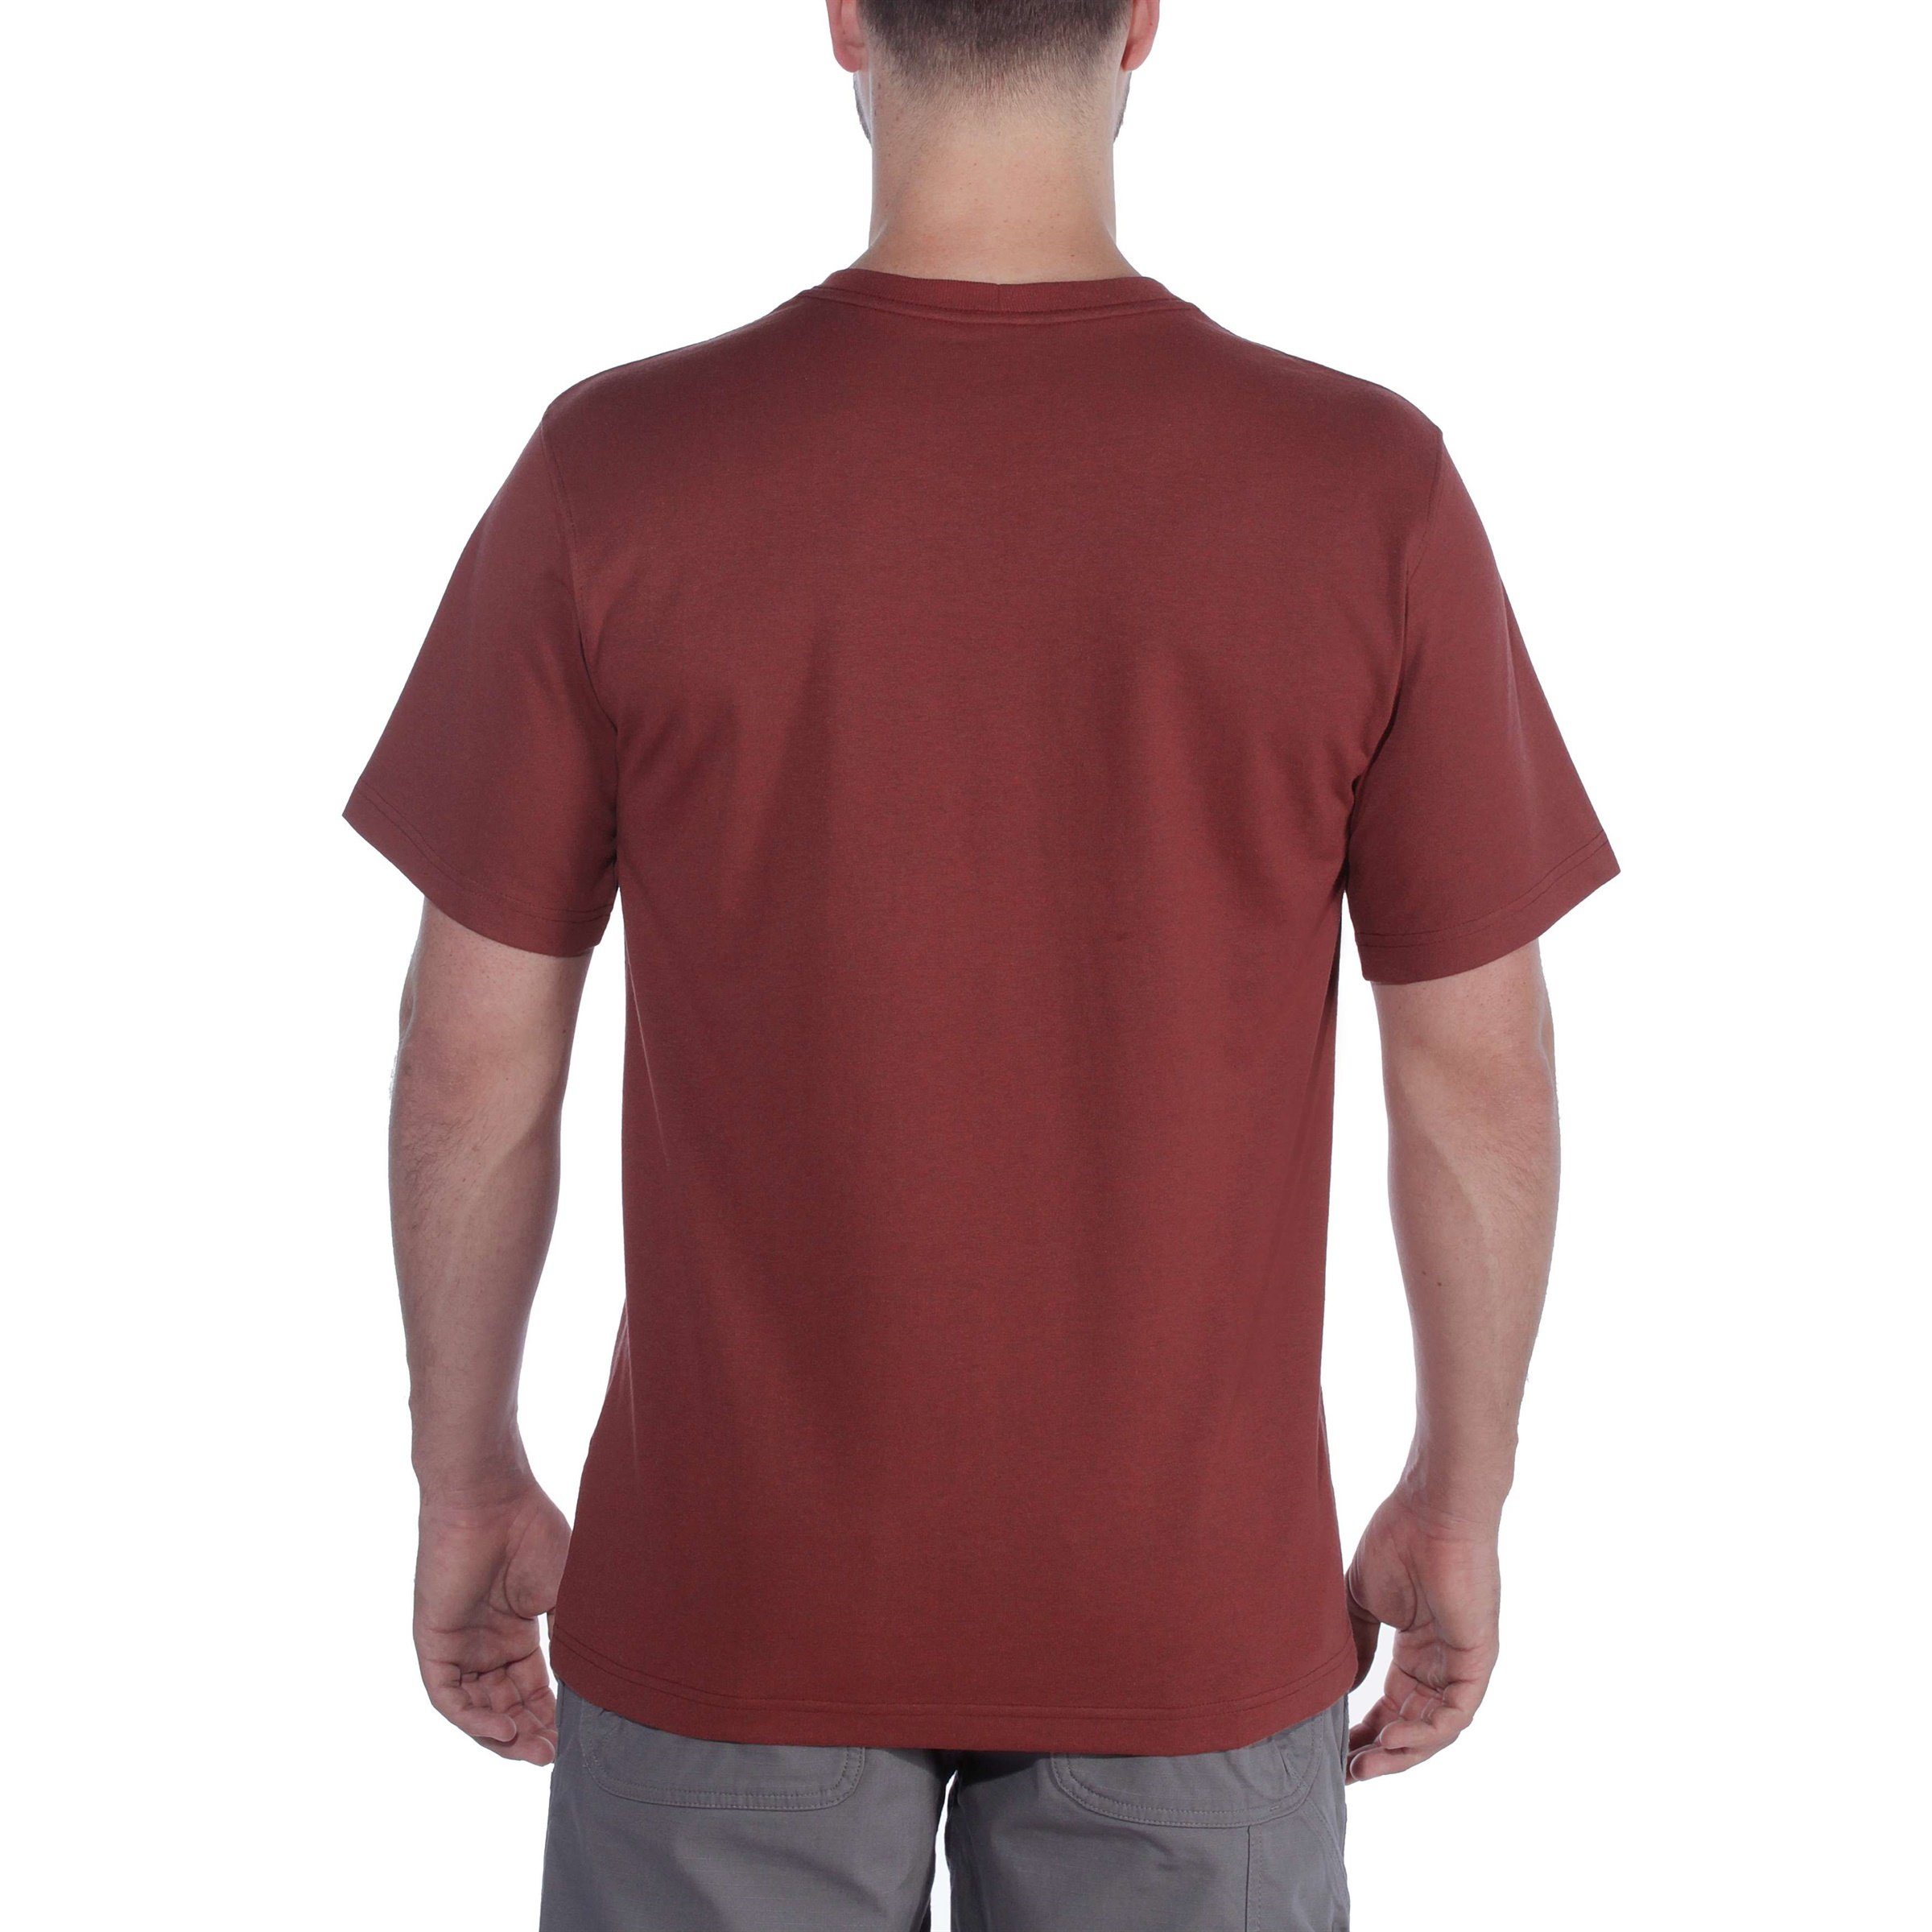 Carhartt T-Shirt Herren Logo T-Shirt Fit Adult Heavyweight Short-Sleeve Graphic navy Relaxed Carhartt